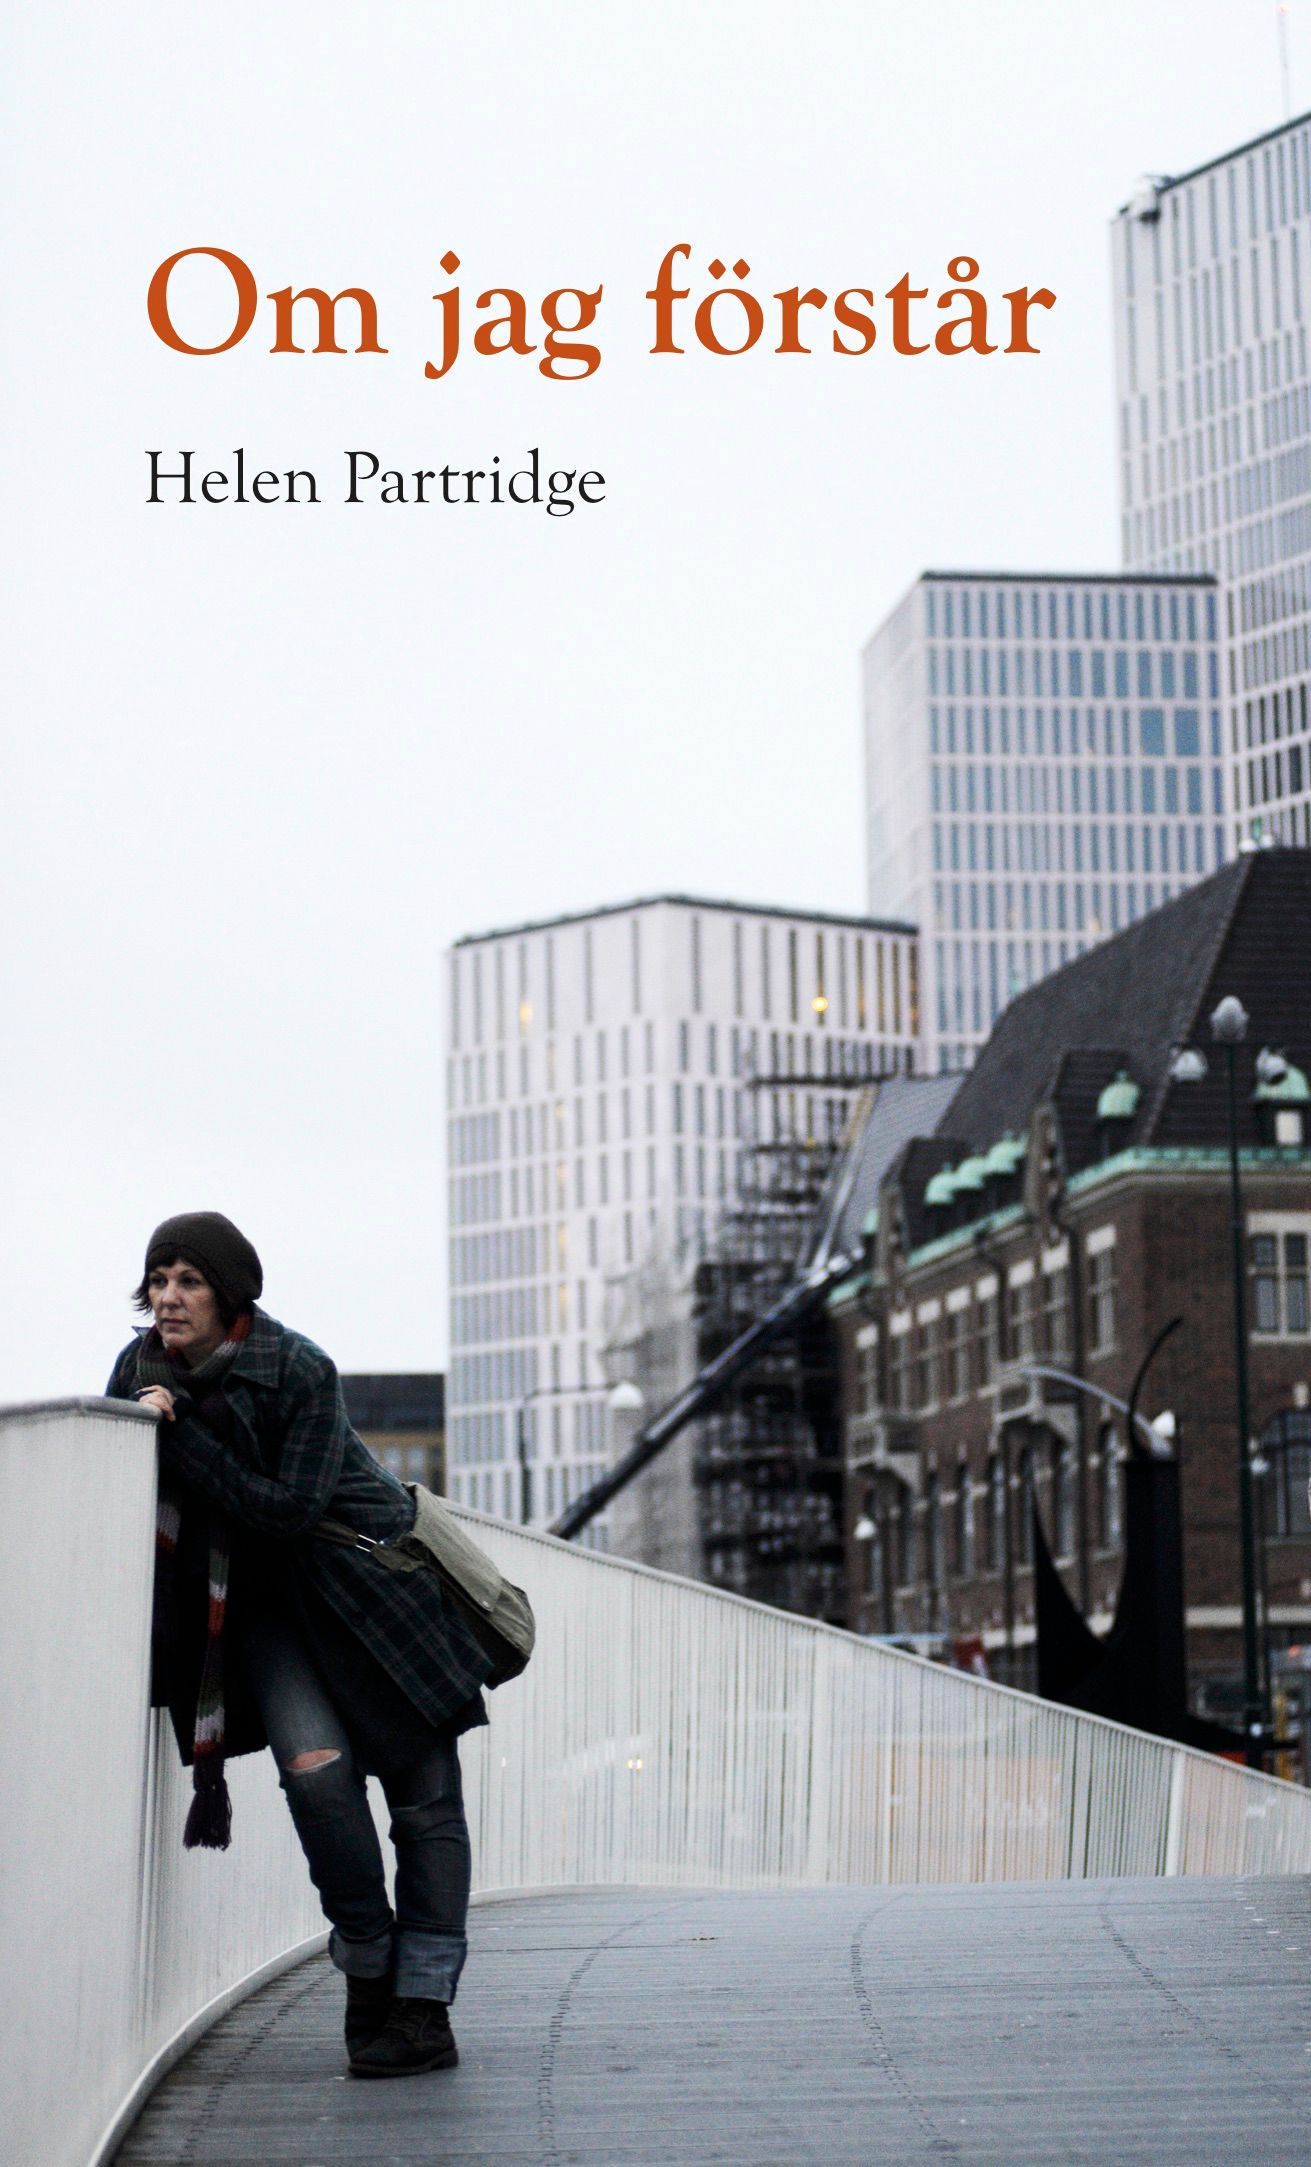 Om jag förstår, eBook by Helen Partridge